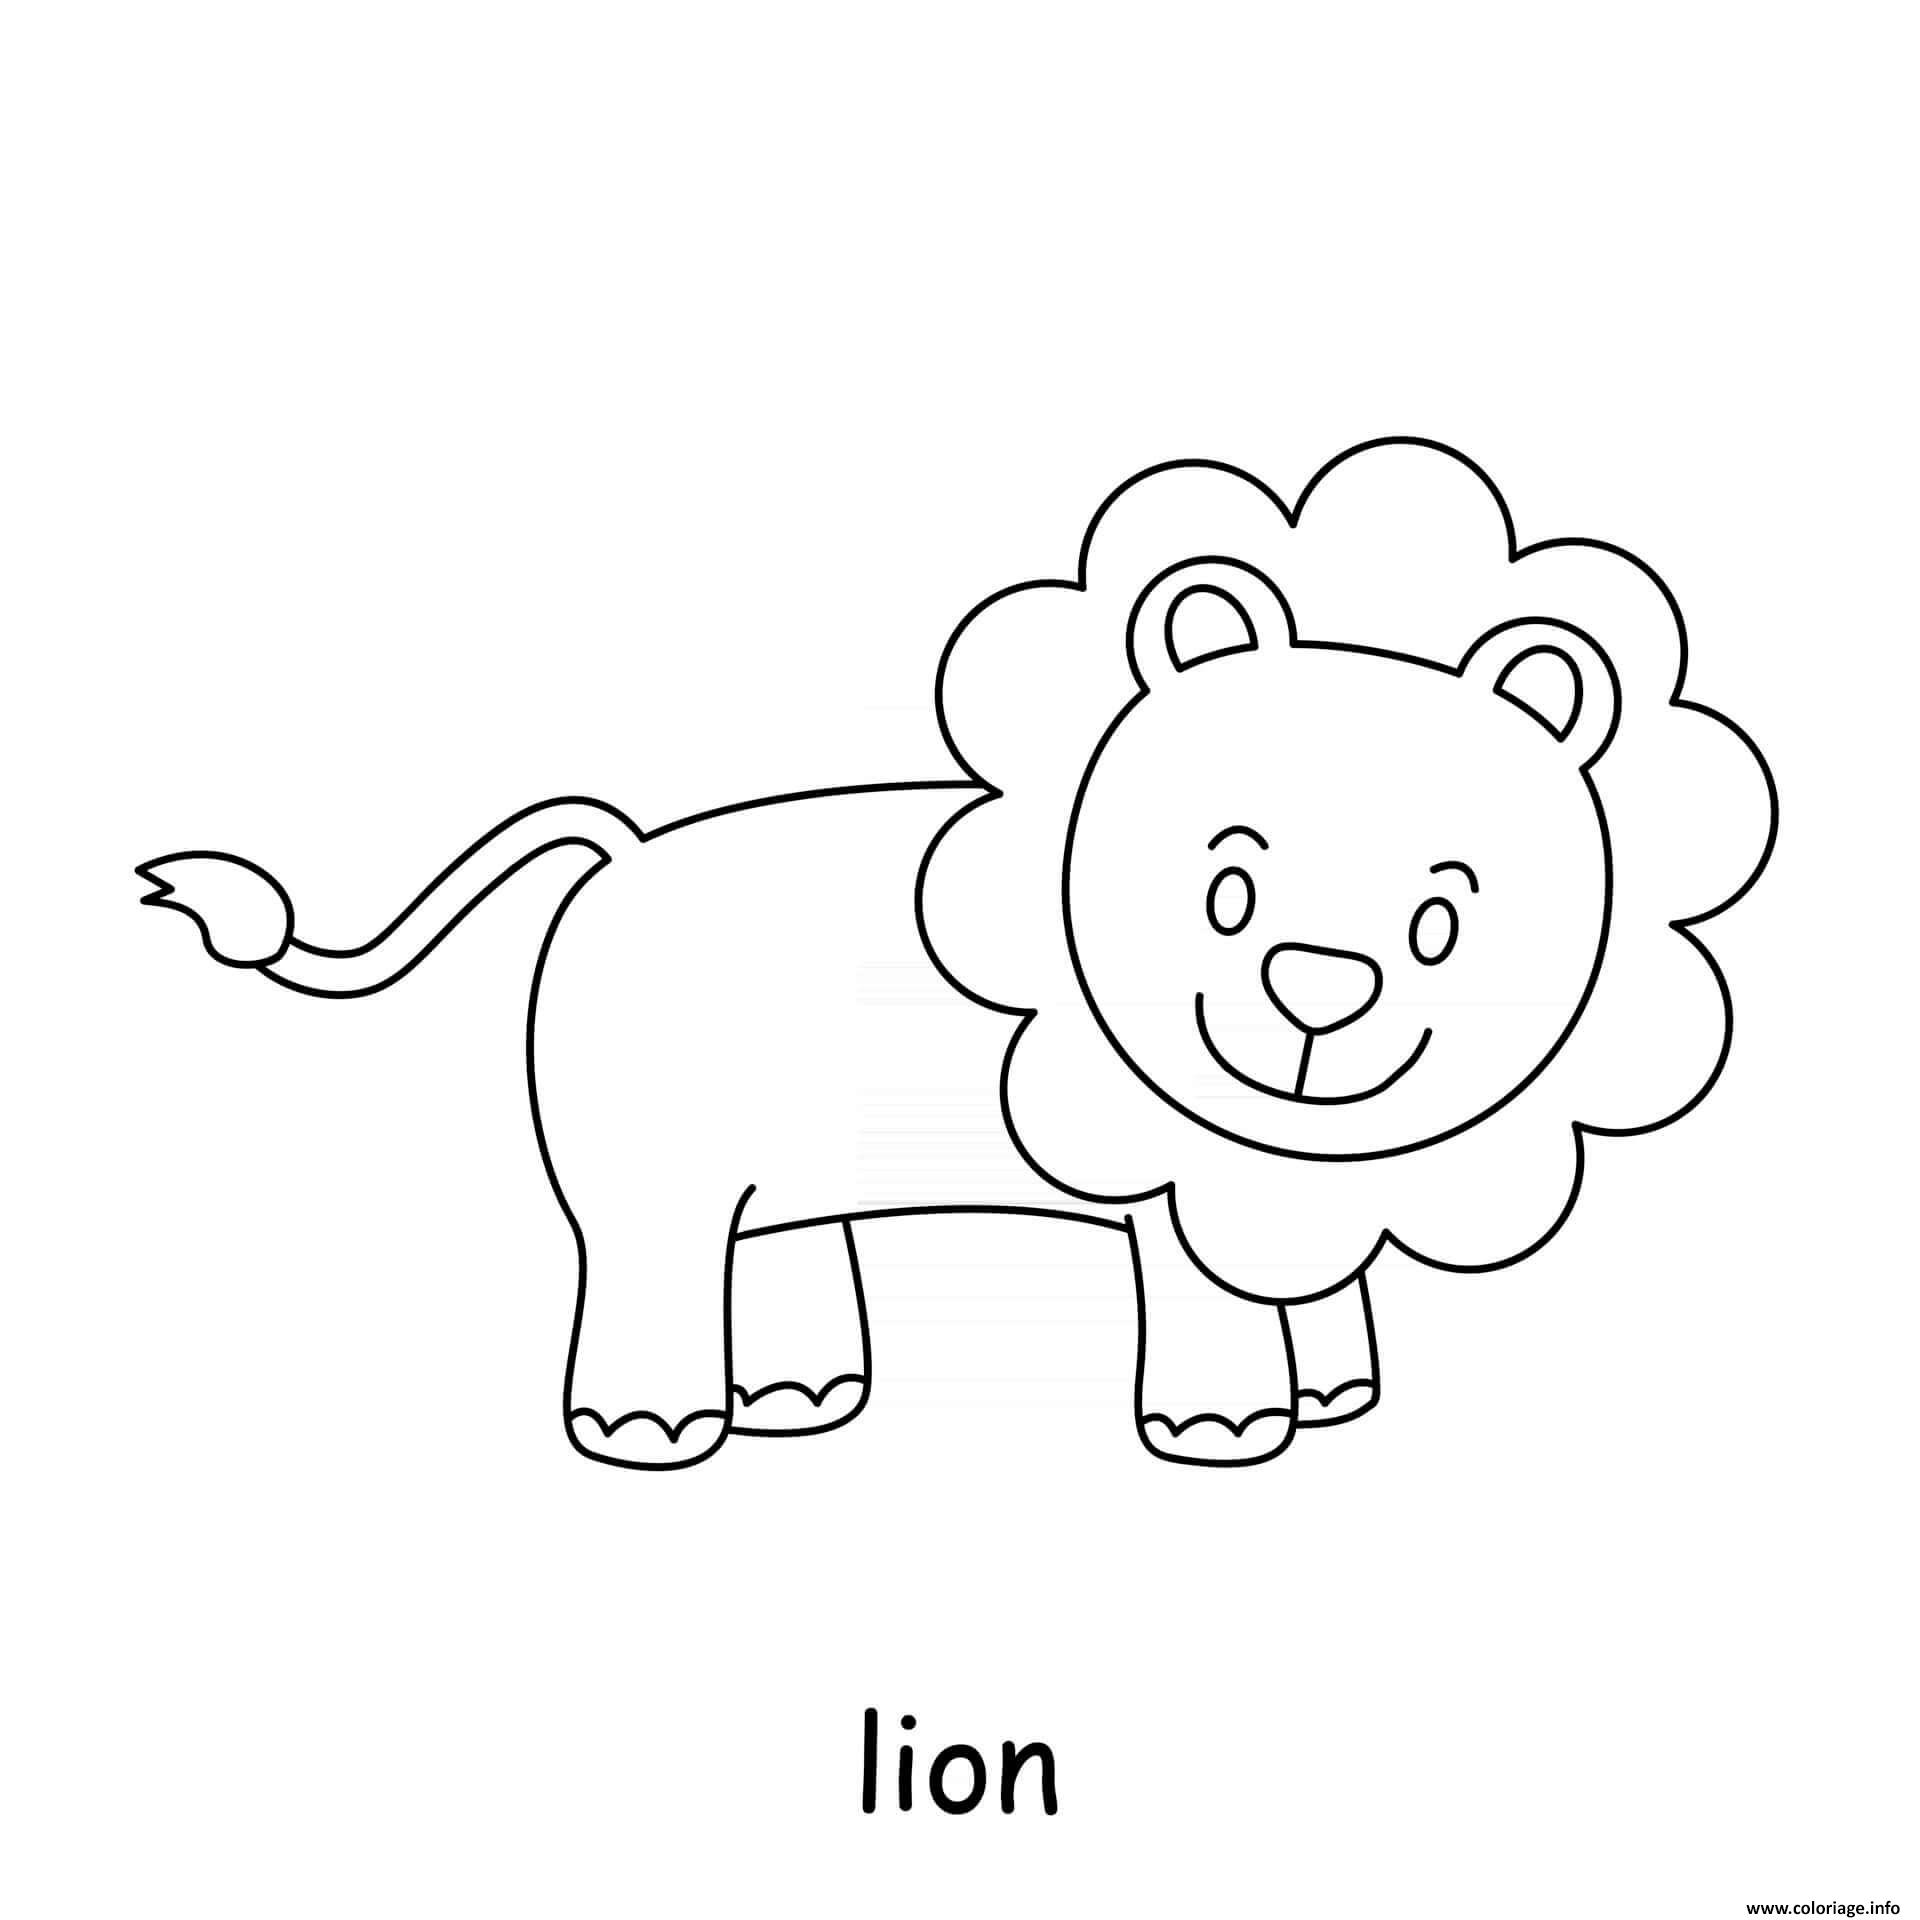 Dessin lion animal sauvage Coloriage Gratuit à Imprimer